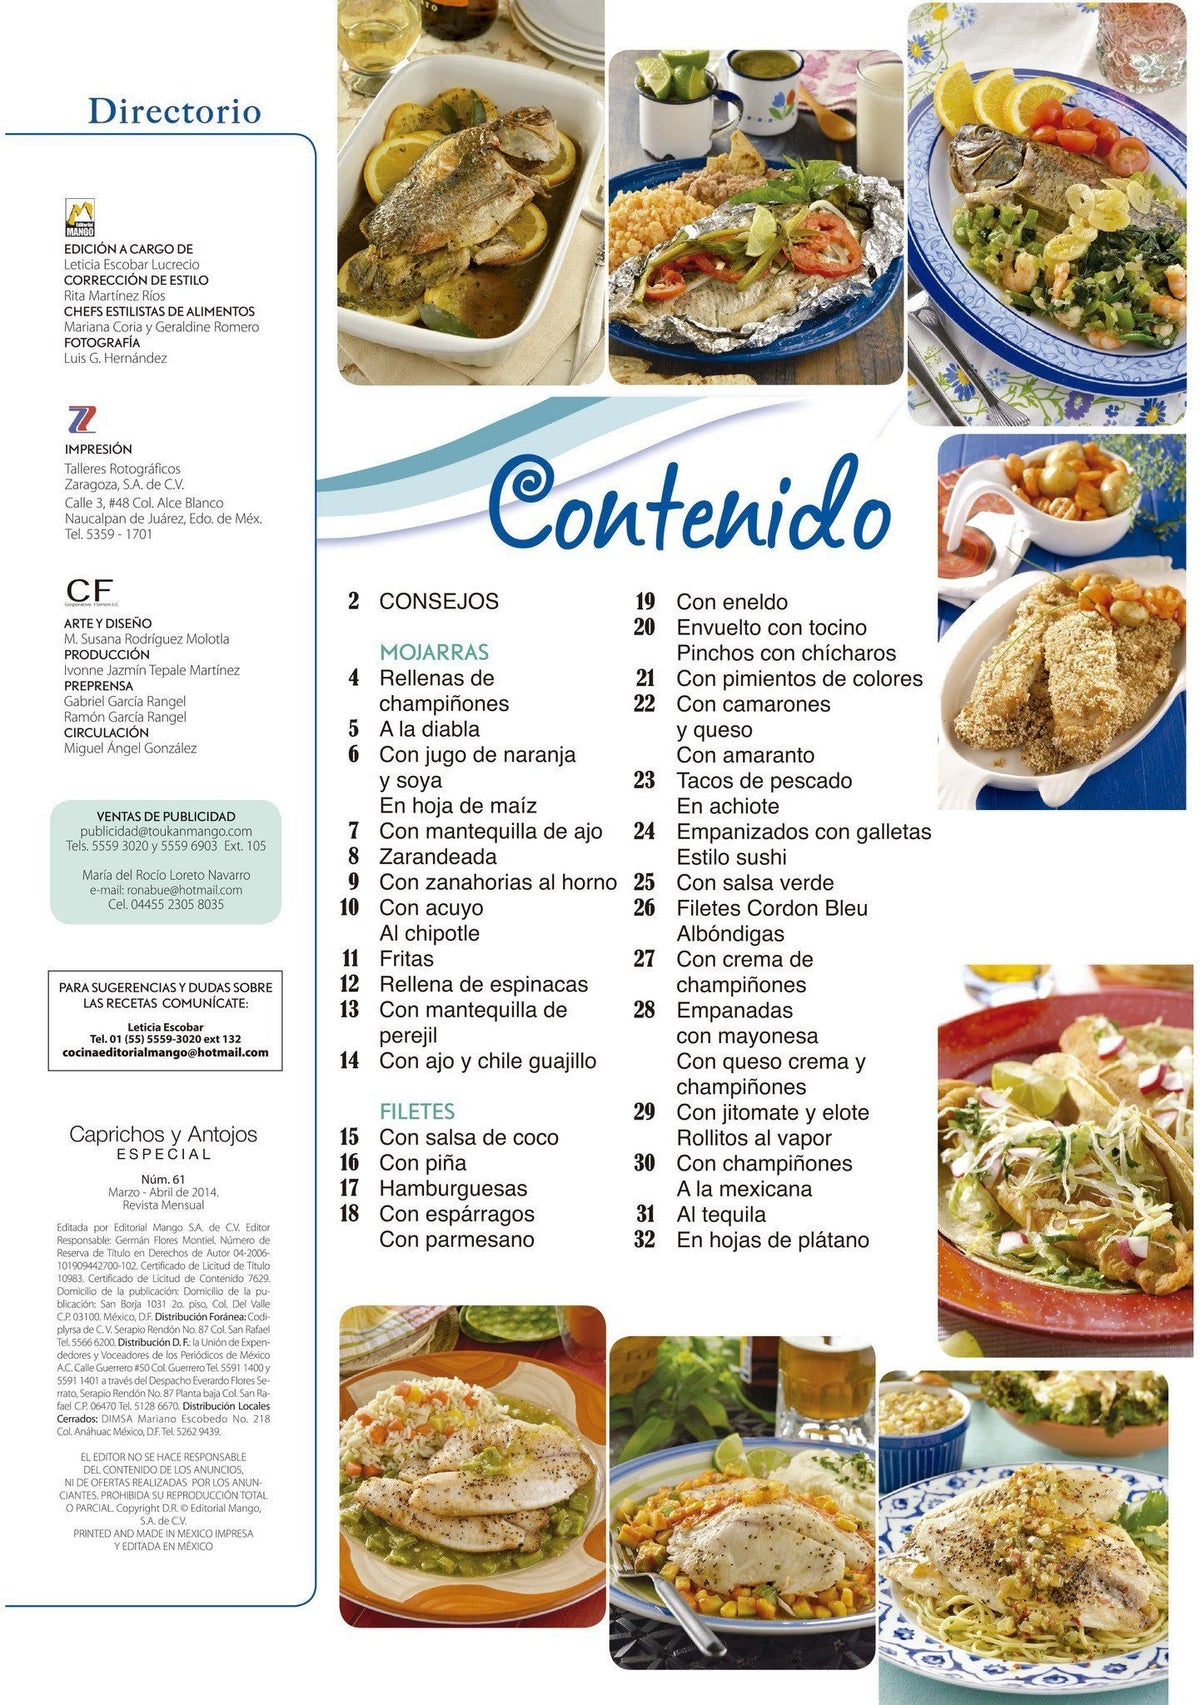 Caprichos y Antojos Especial 61 - Nuevas recetas de mojarras y filetes - Formato Digital - ToukanMango